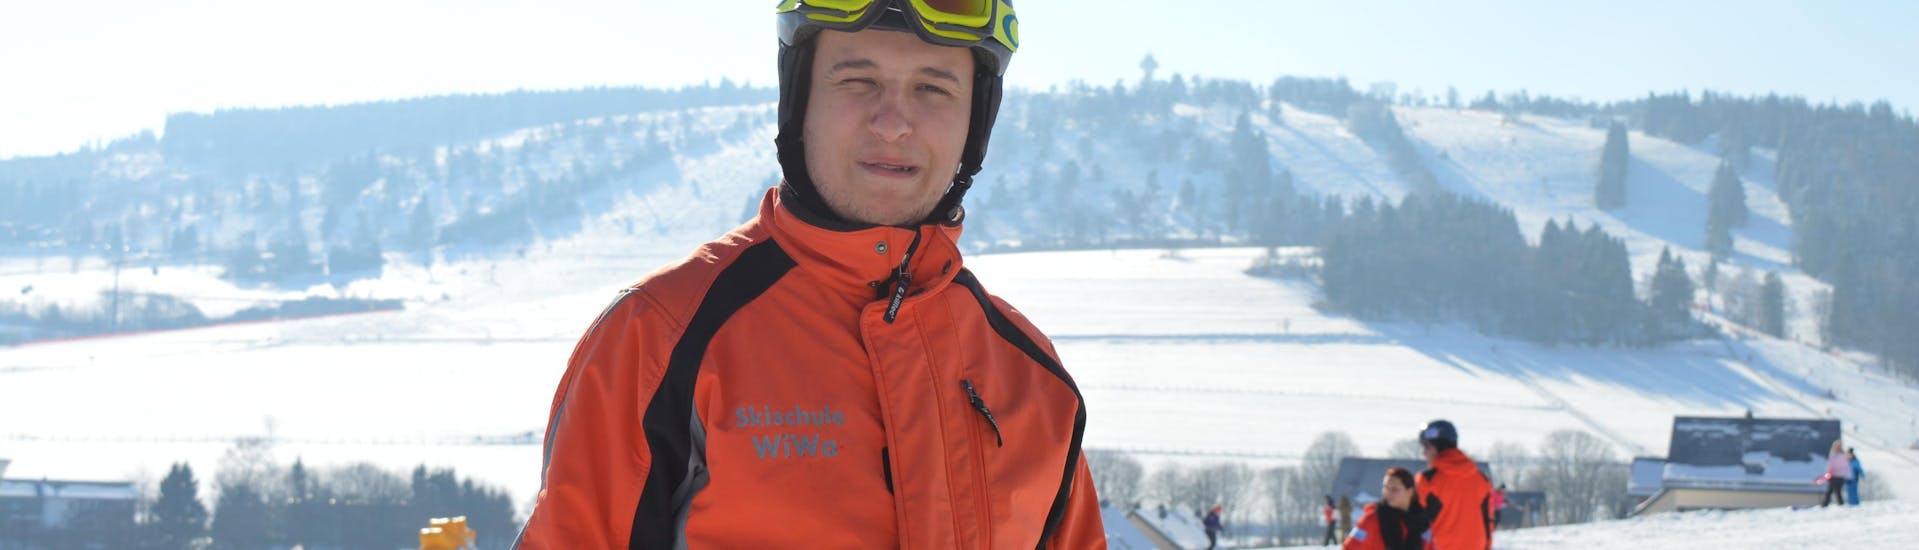 Een skileraar van DSV Skischule & Skiverleih WIWA geeft een volwassen skiër advies tijdens de cursus Privélessen skiën voor volwassenen - Alle niveaus.